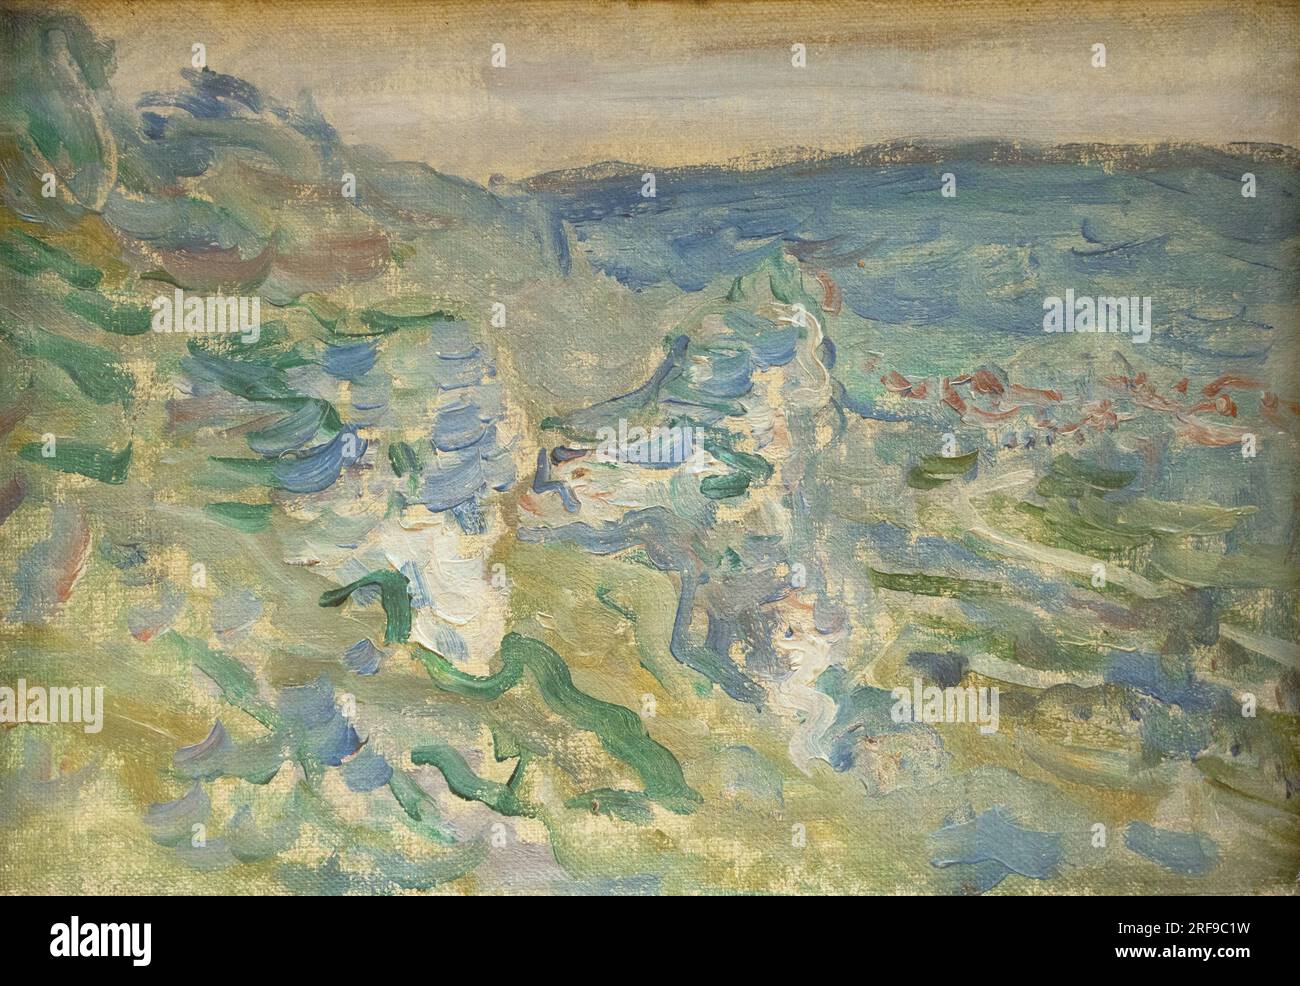 Claude Monet painting; 'la seine, vue des hauteurs de Chantemesle', landscape painting 1881; 19th century French Impressionism art Stock Photo